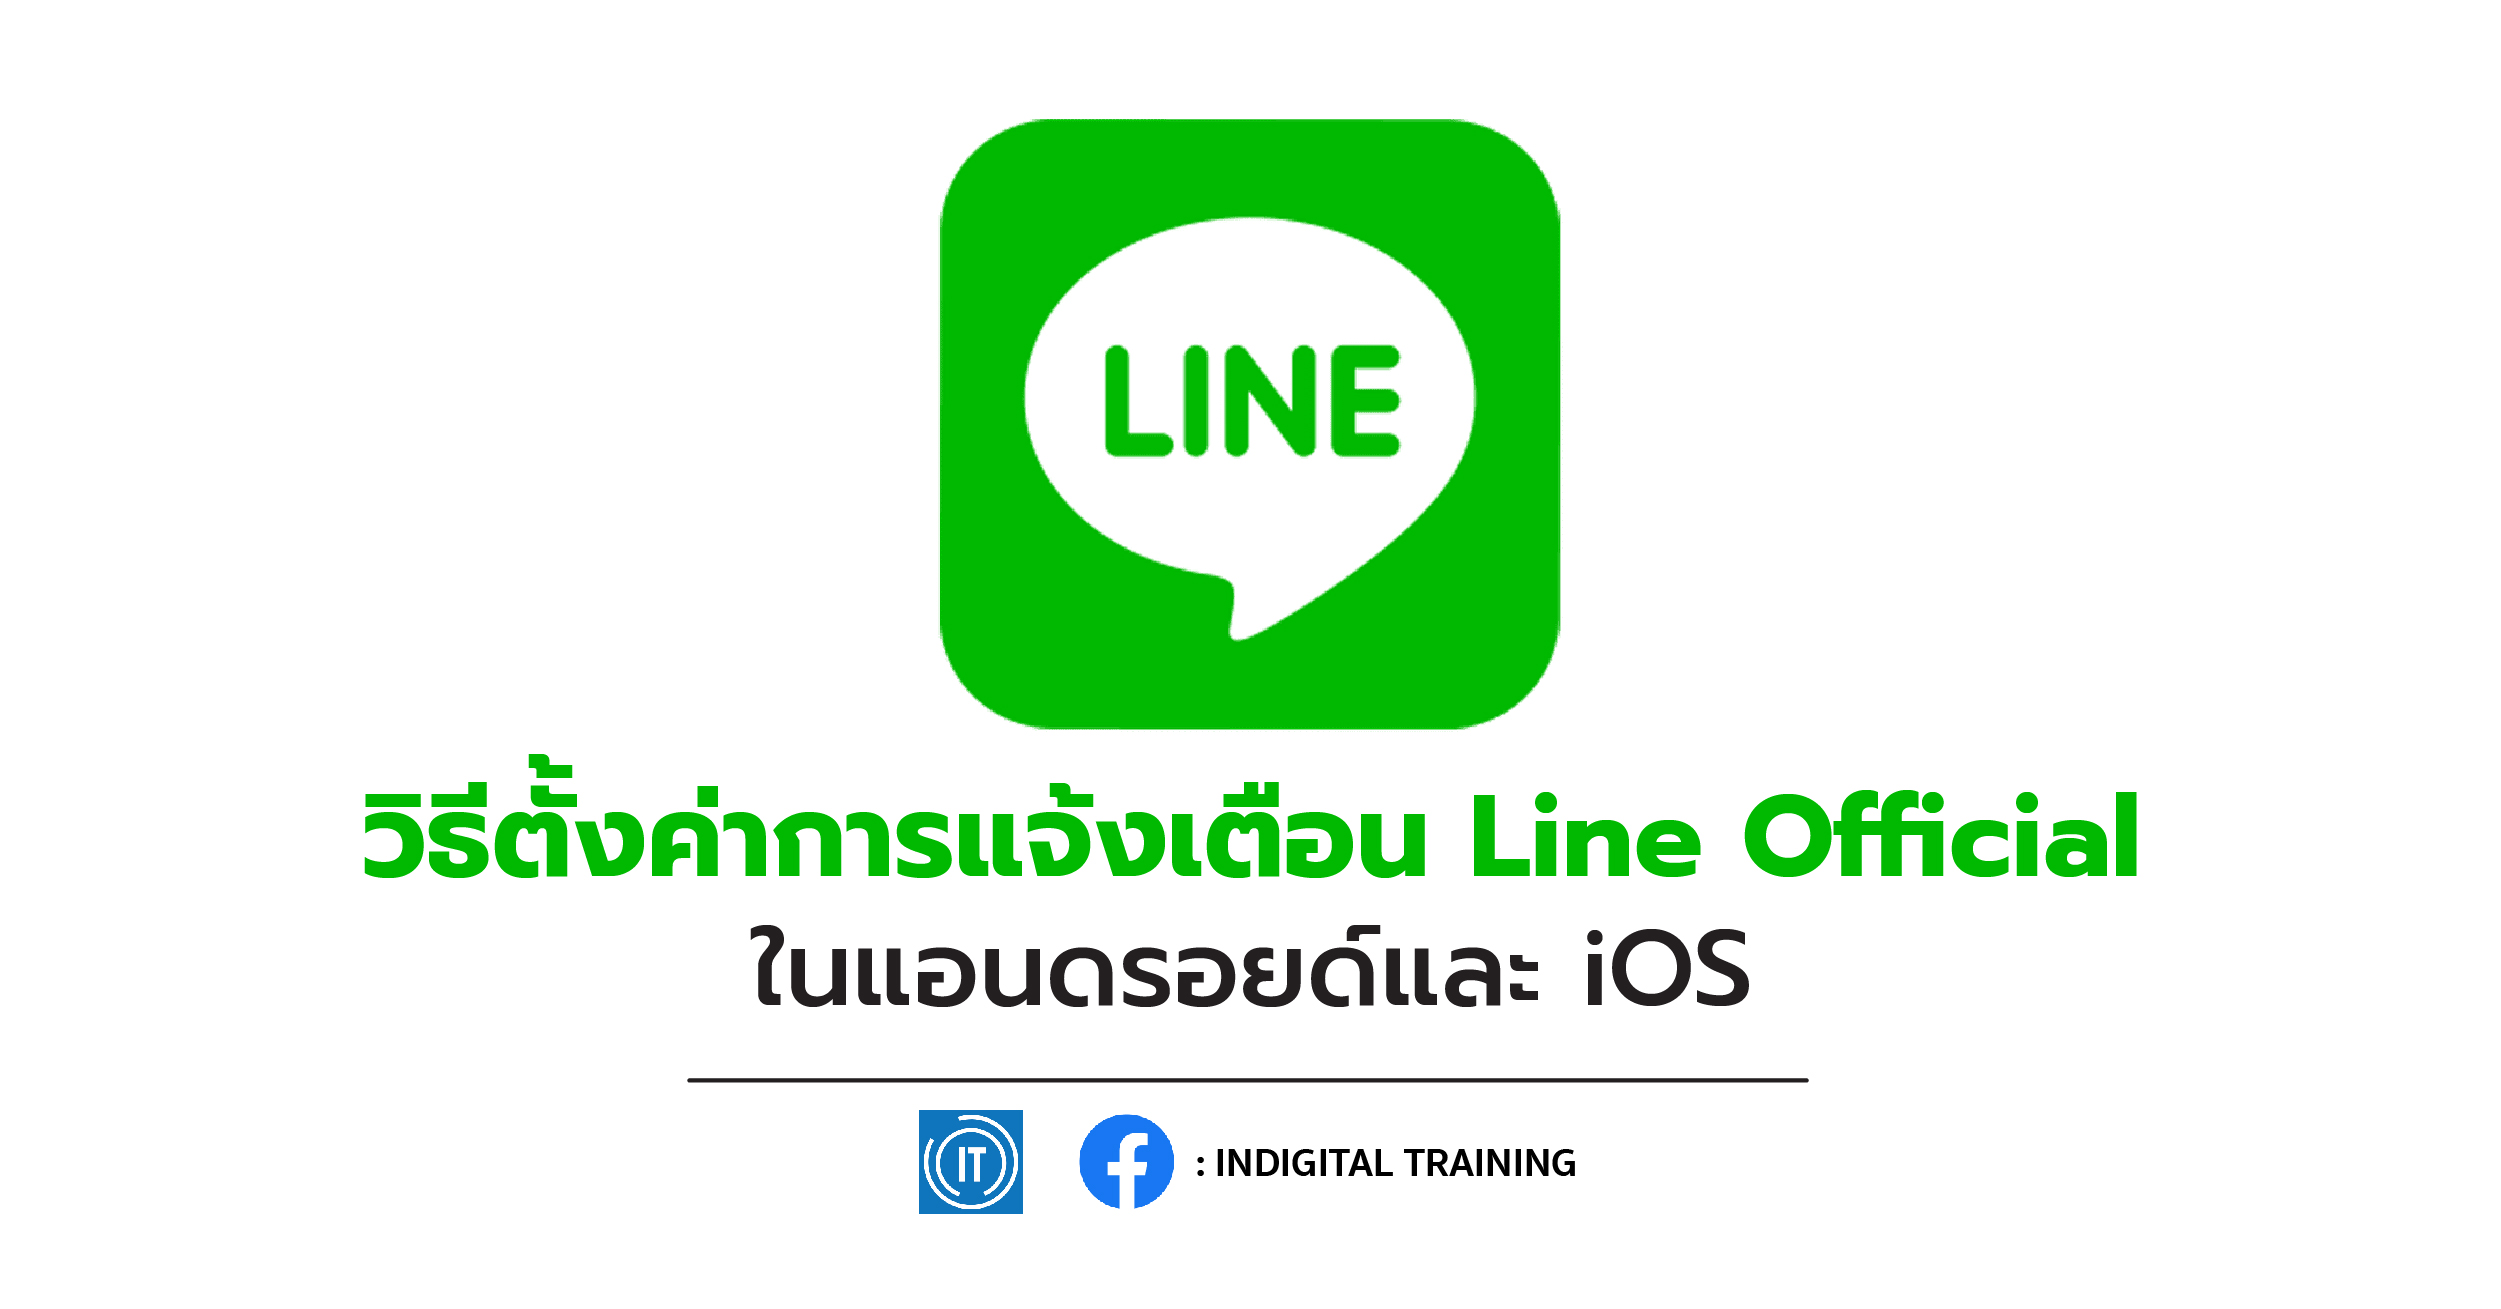 วิธีตั้งค่าการแจ้งเตือน Line Official ในแอนดรอยด์และ iOS